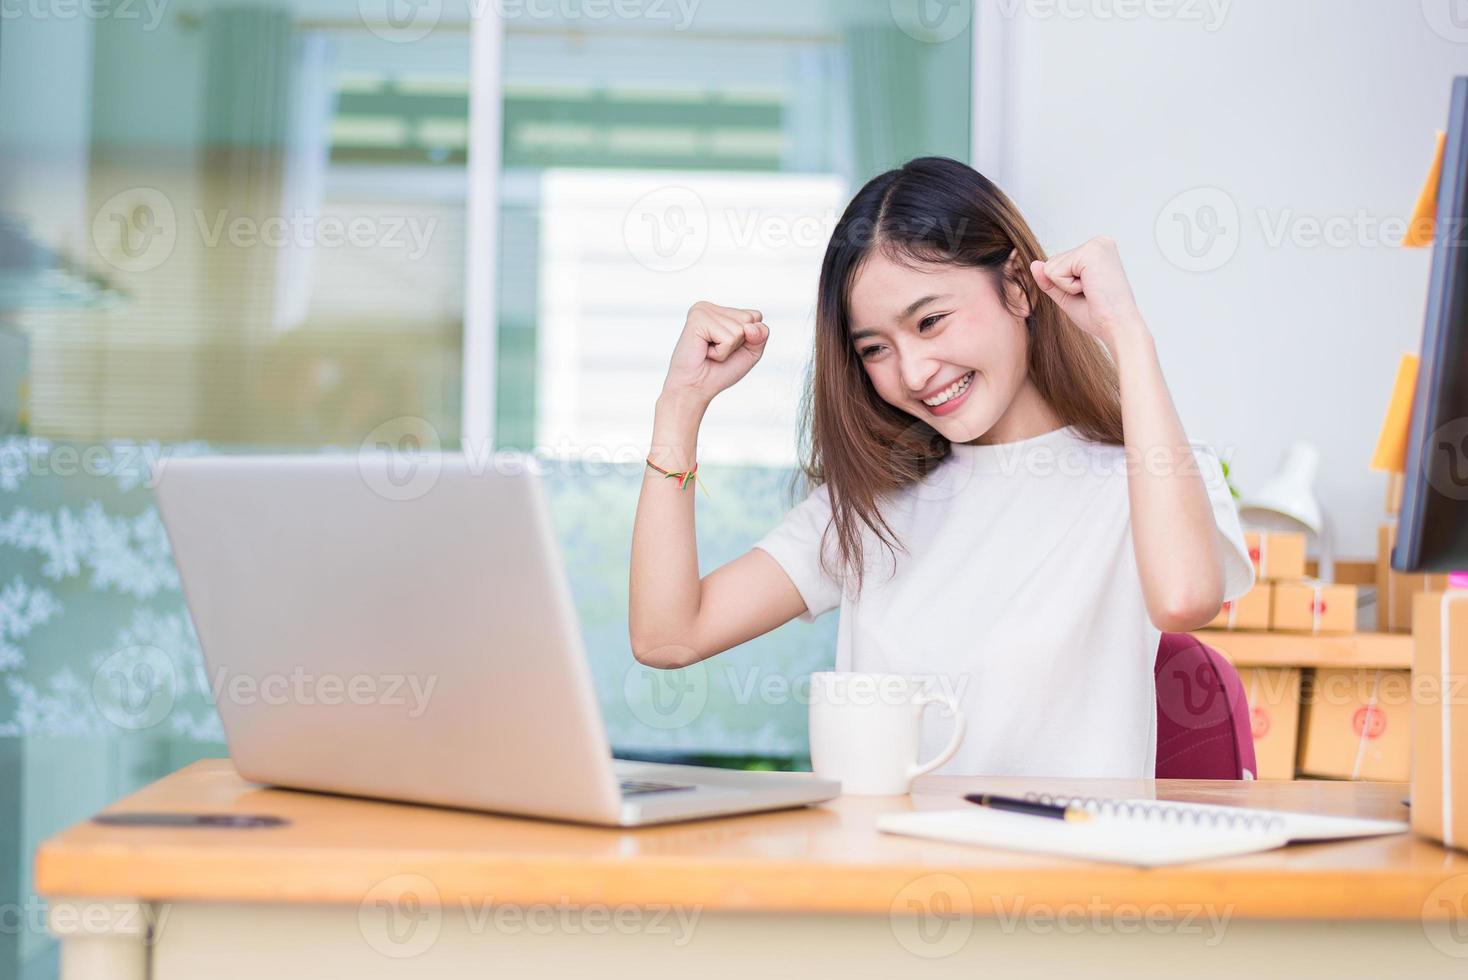 aziatische vrouw geniet tijdens het gebruik van laptops en internet op kantoor foto